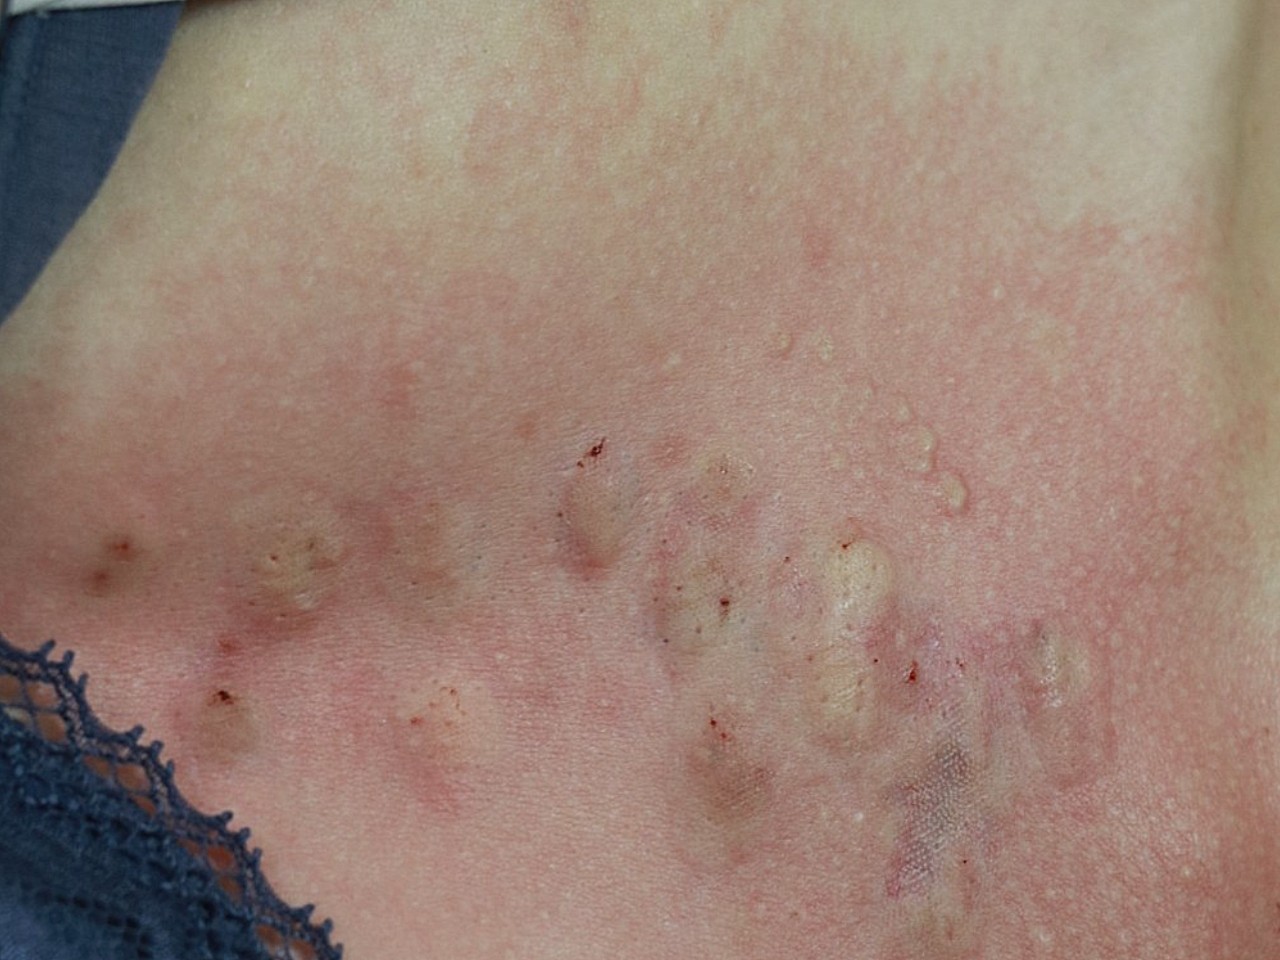 我胸前这疤痕有5年了,是长痘痘引起的,有时候还会痒